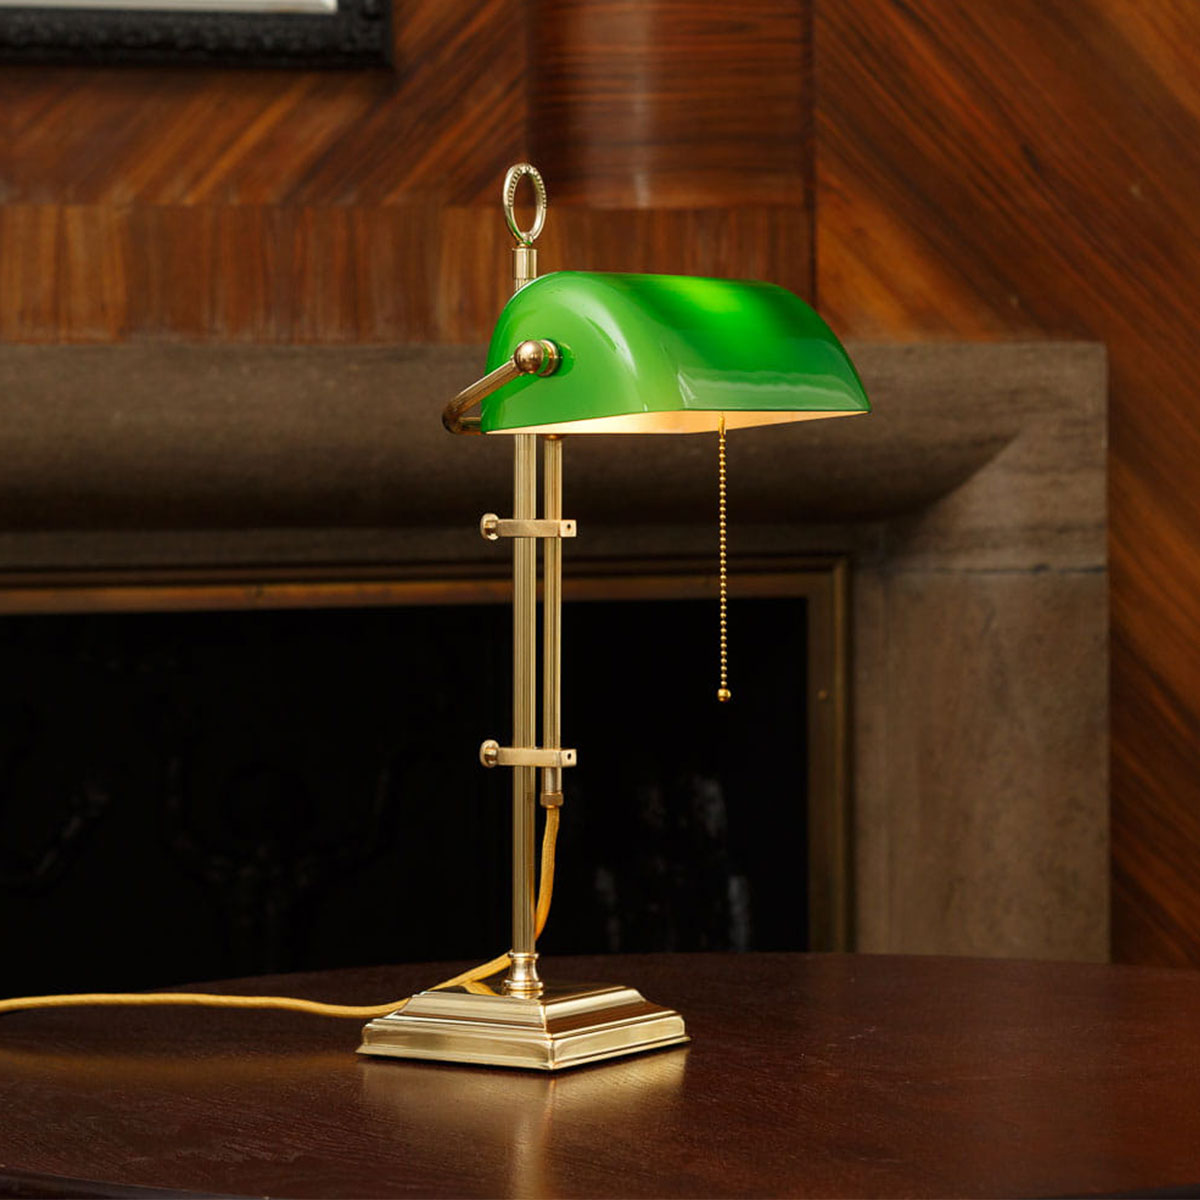 Banker’s Lamp – klassische Schreibtischleuchte mit Glasschirm: Messing poliert, lackiert